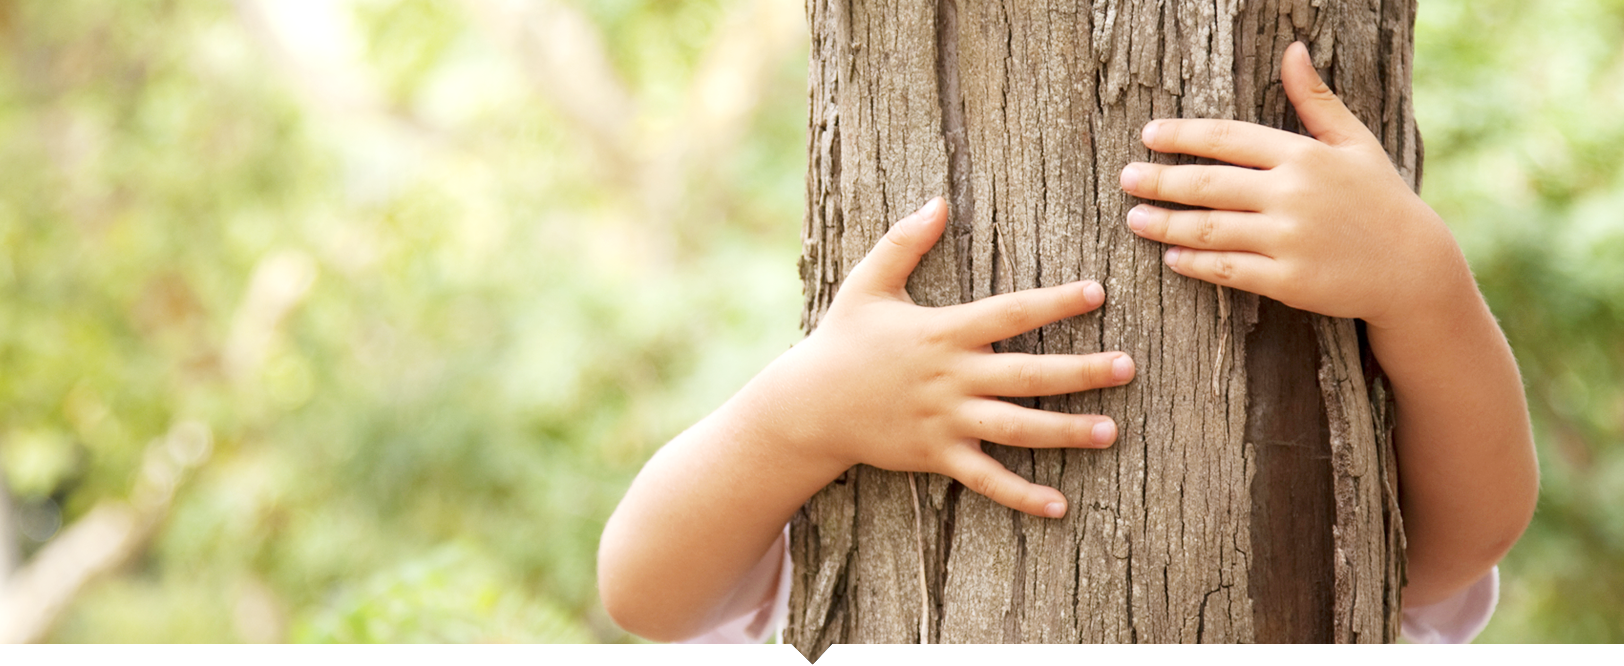 Kind umarmt einen Baum man sieht nur die Hände